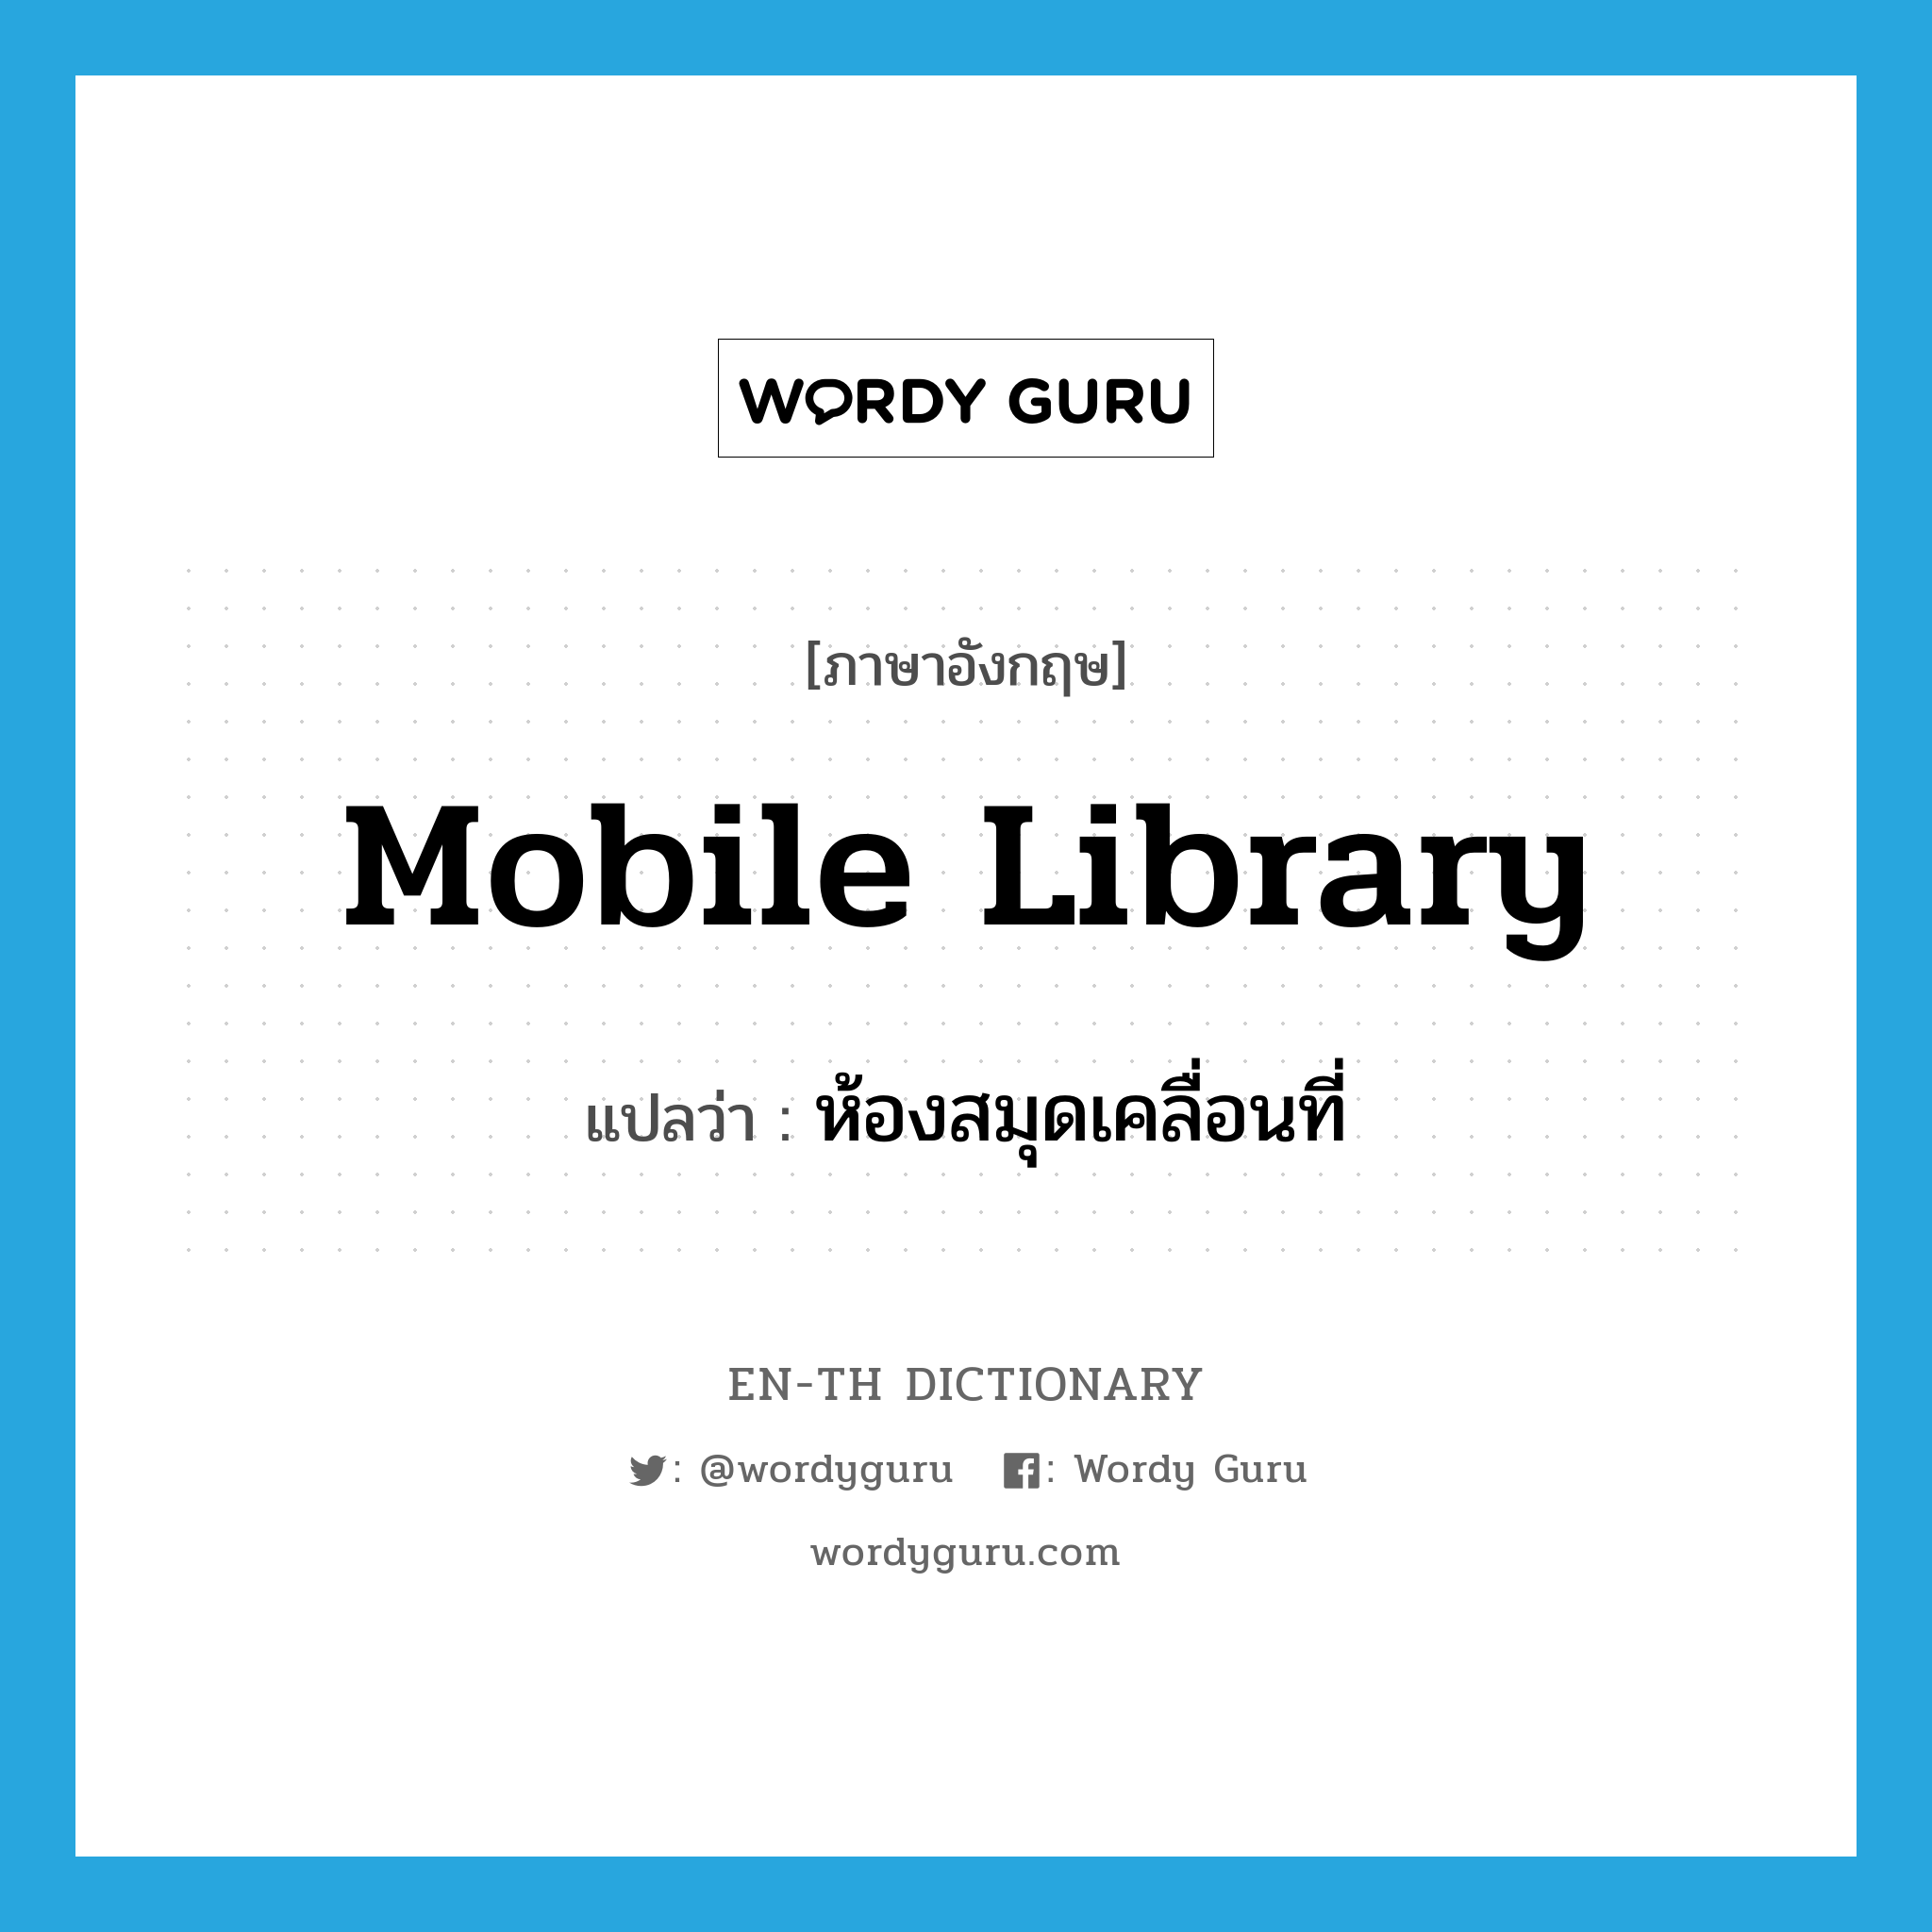 mobile library แปลว่า?, คำศัพท์ภาษาอังกฤษ mobile library แปลว่า ห้องสมุดเคลื่อนที่ ประเภท N หมวด N